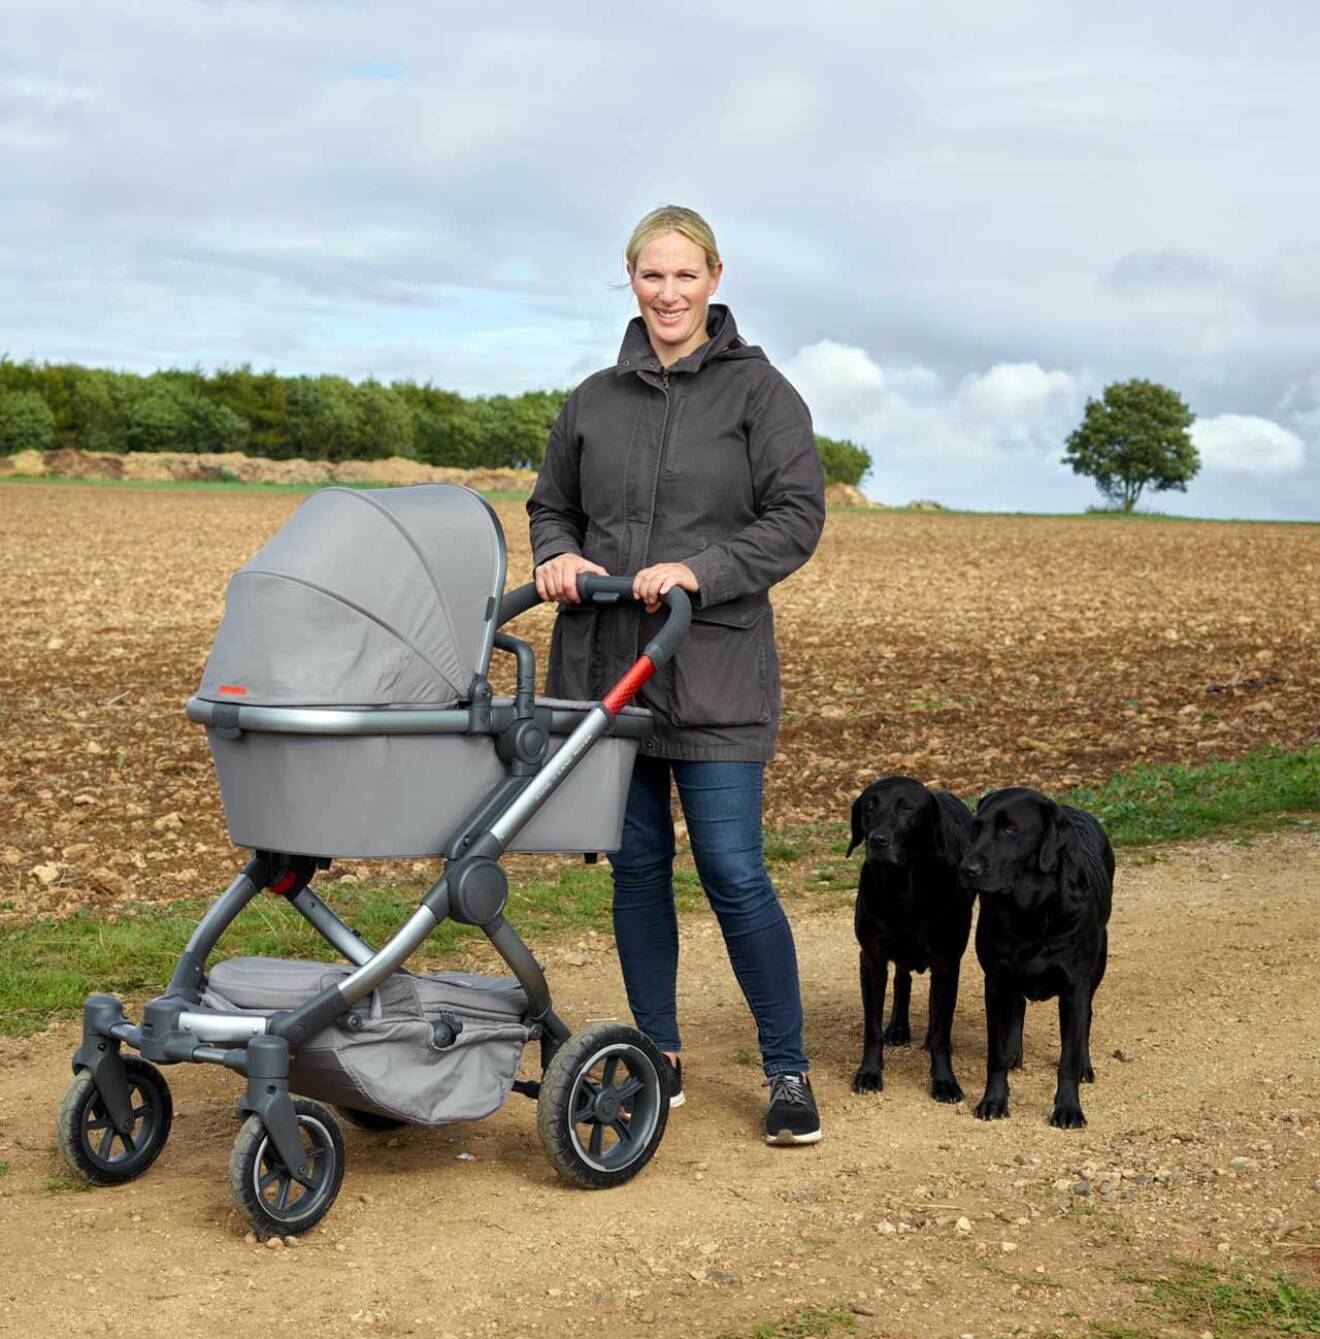 Zara Tindall med sina två fina labradorer. Här poserar hon i egenskap av ambassadör för barnvagnsnärket iCandy.